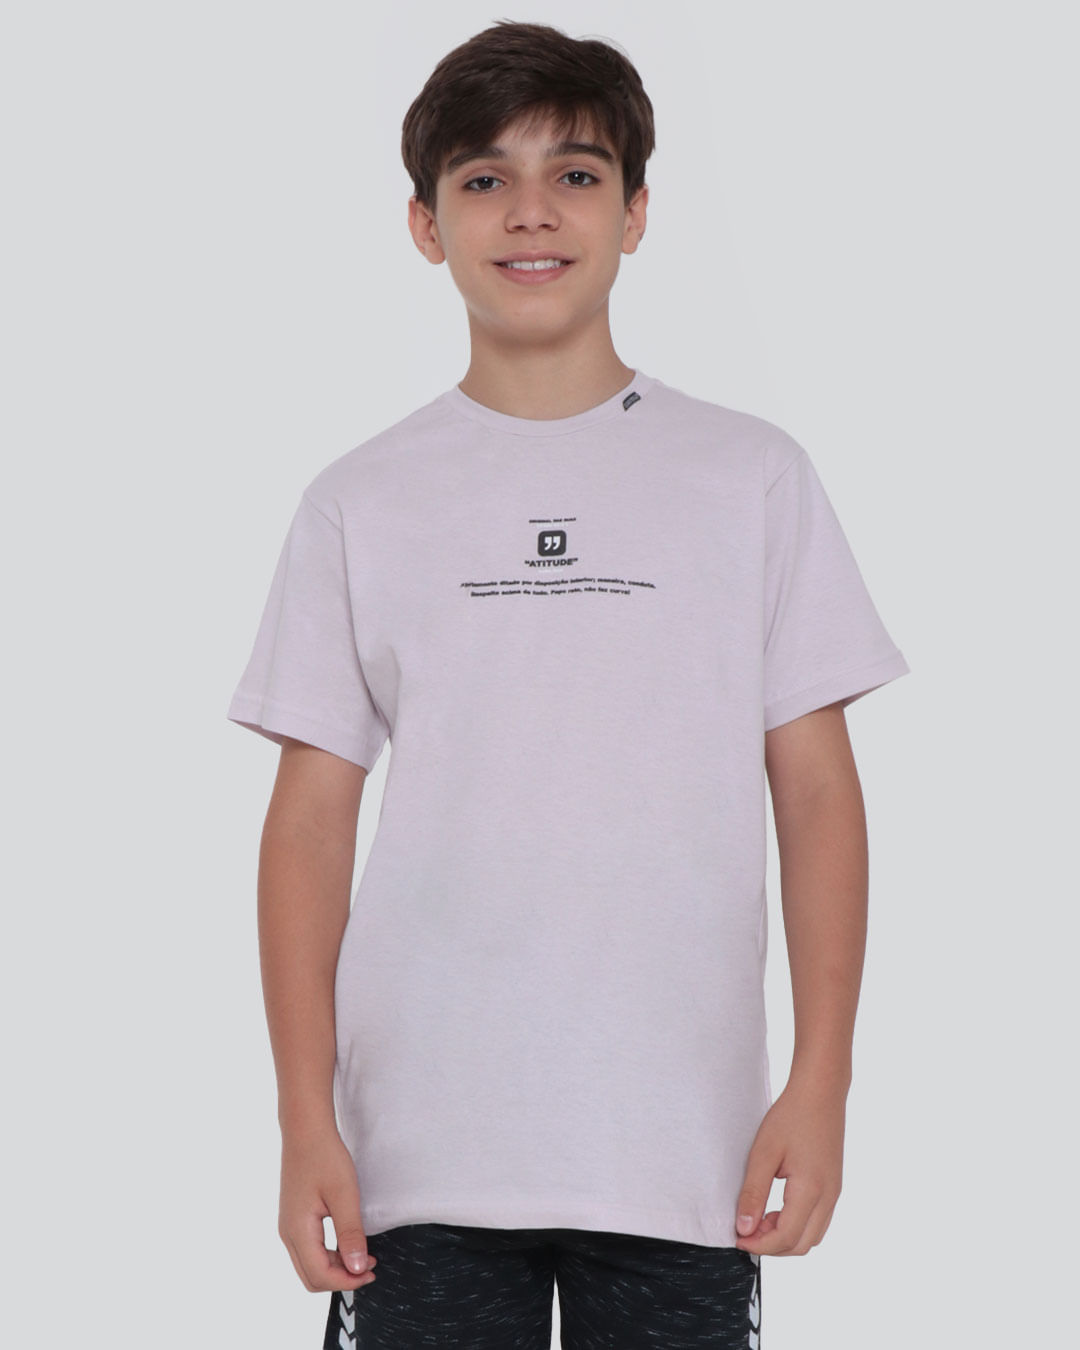 Camiseta-Juvenil-Estampa-Atitude-Overcore-Lilas-Claro